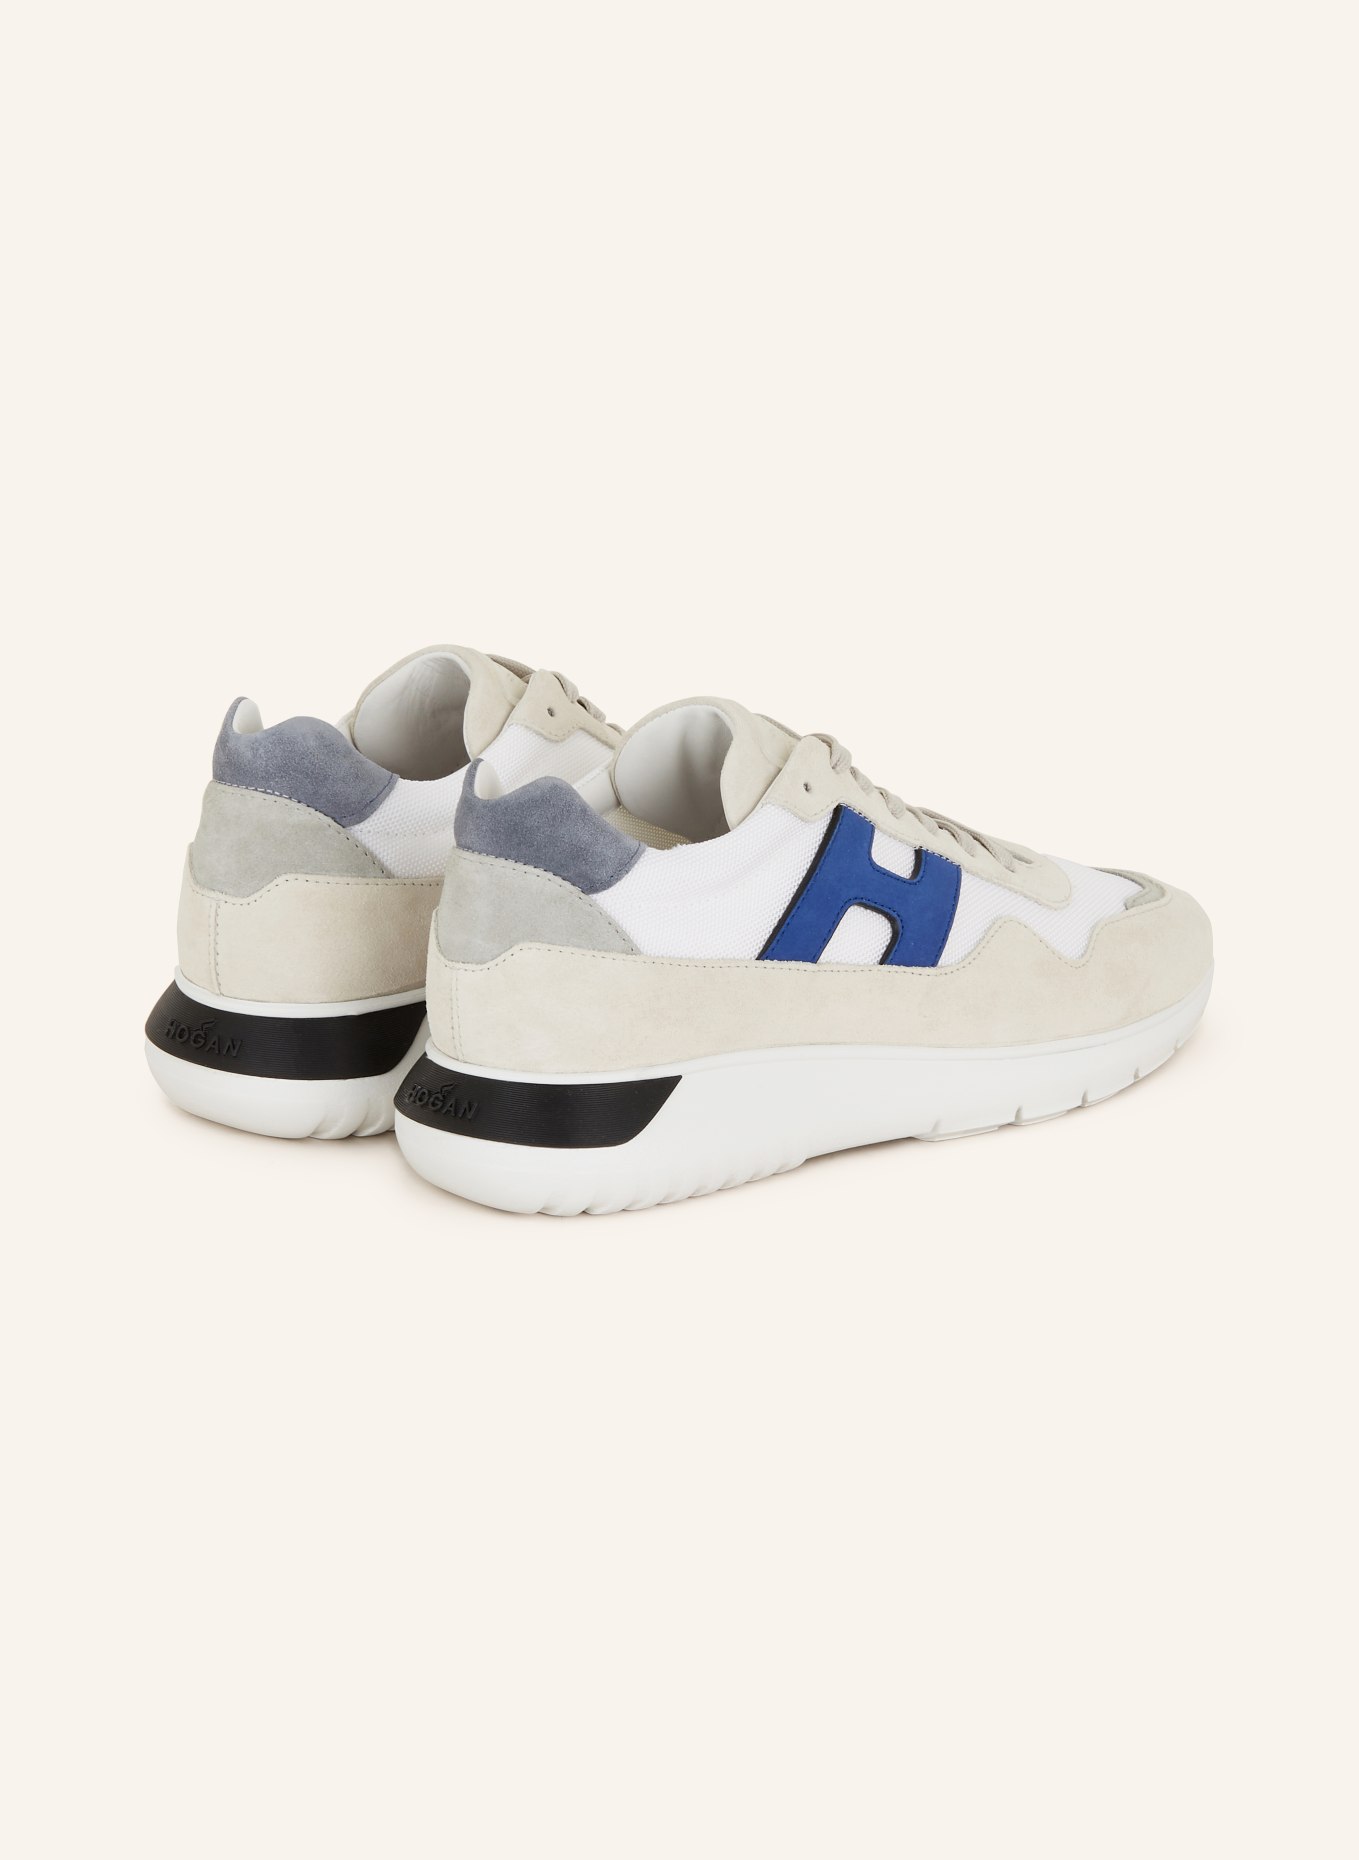 HOGAN Sneaker HOGAN INTERACTIVE3, Farbe: WEISS/ HELLGRAU/ BLAU (Bild 2)